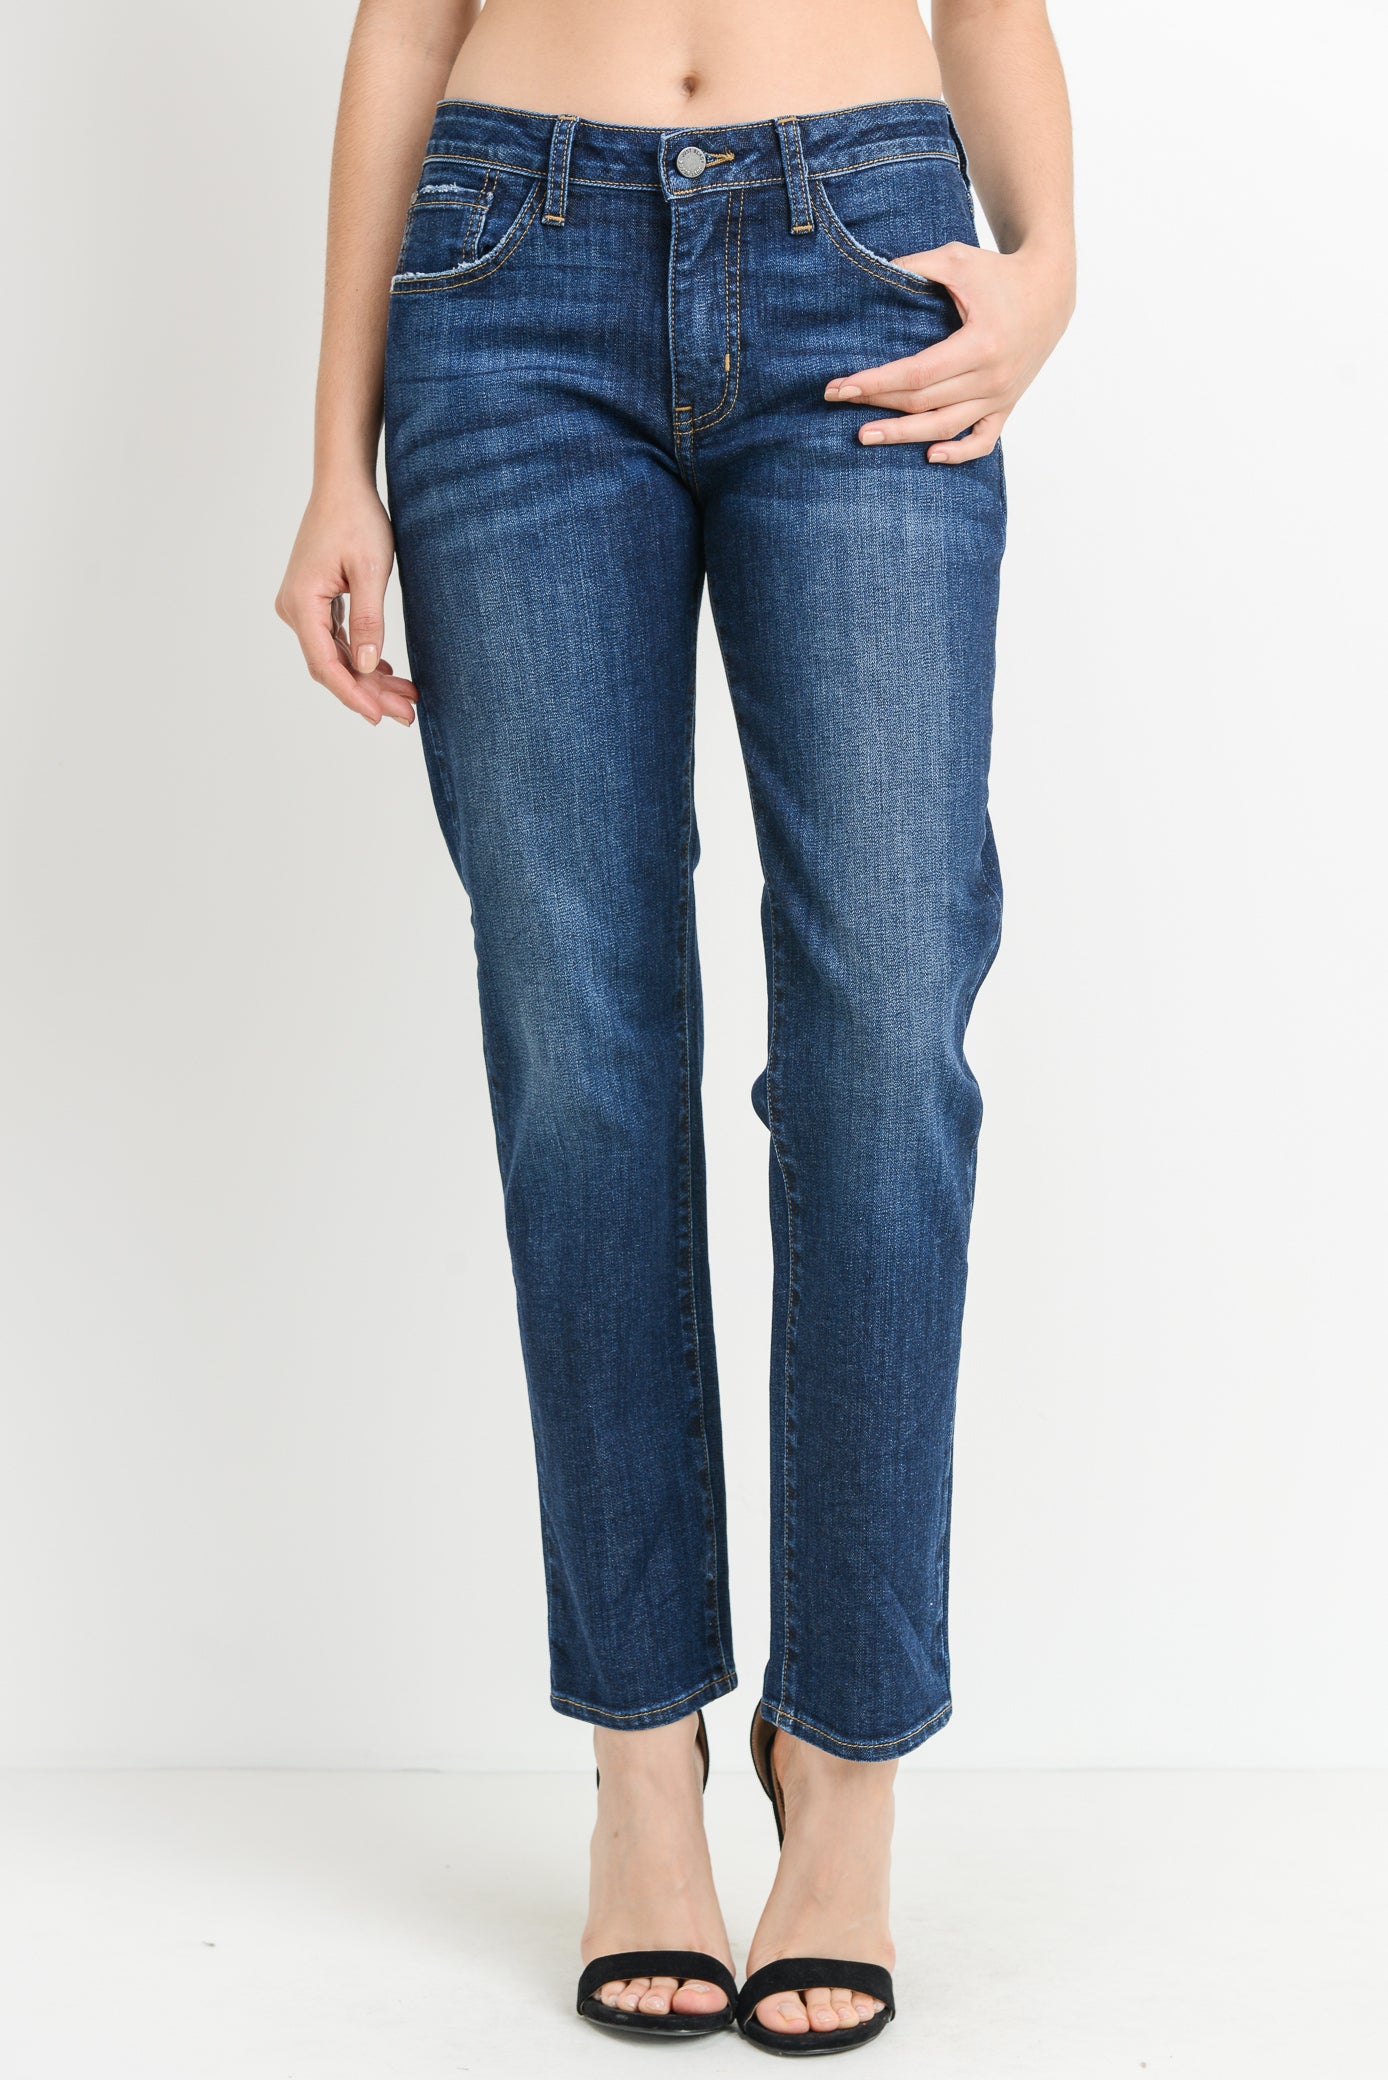 Women's Slim Boyfit Jeans